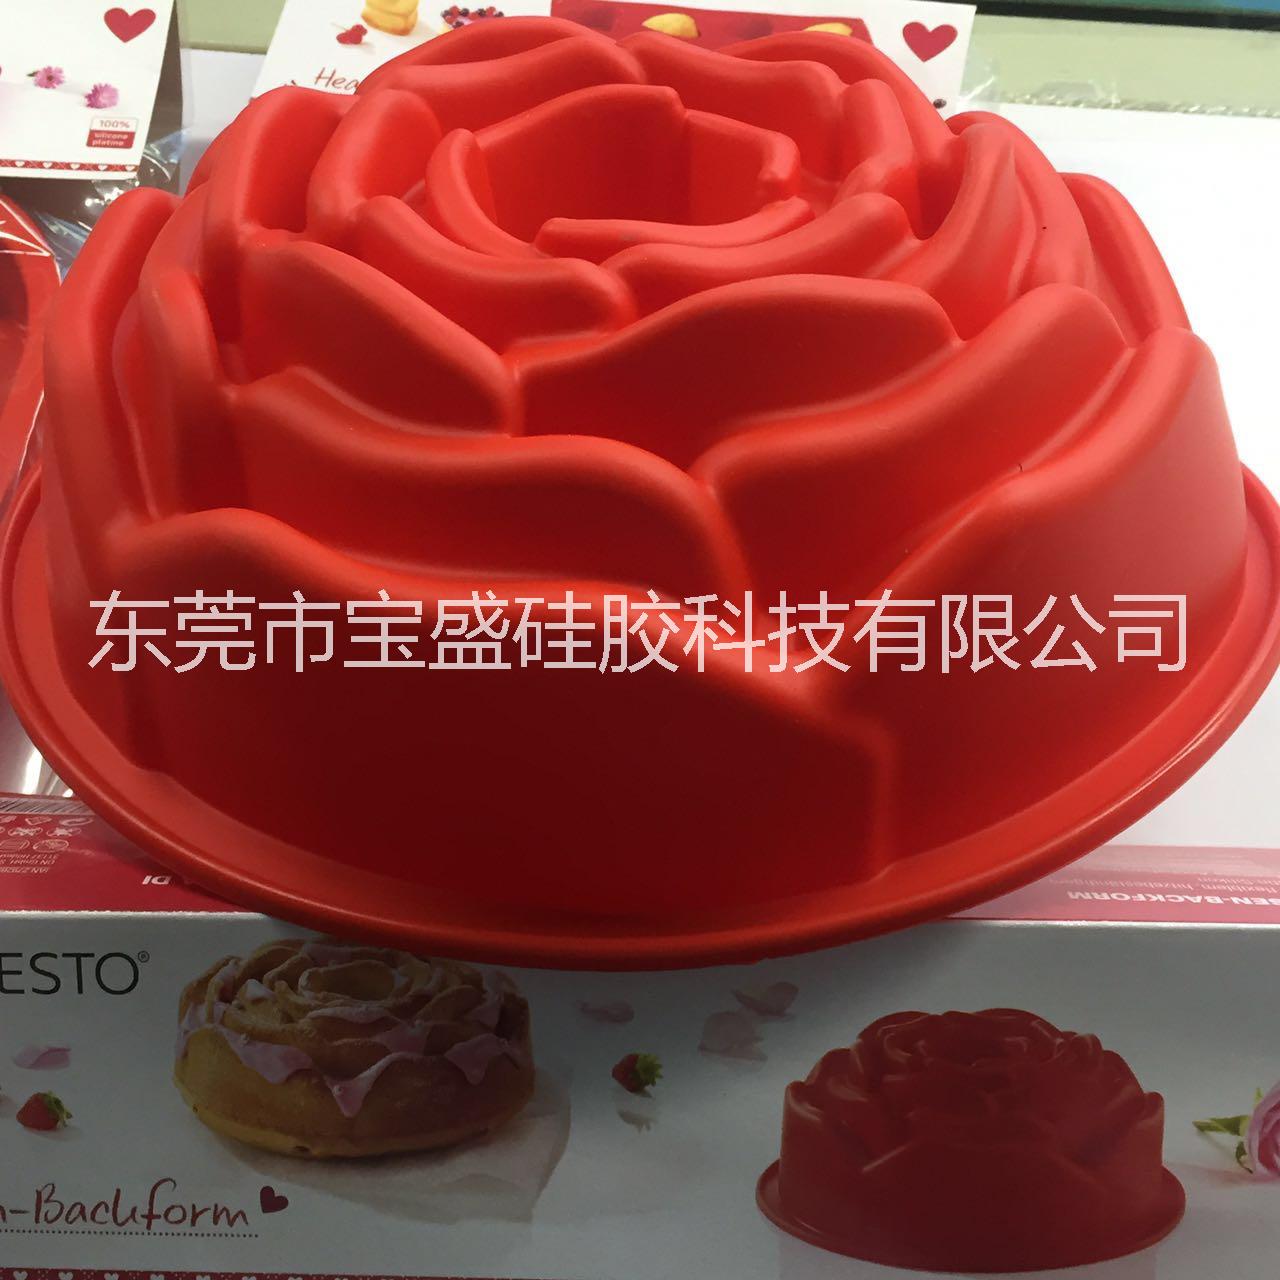 单个大玫瑰烤盘 硅胶蛋糕模具 单孔大硅胶模具 大烤盘 吐司面包模